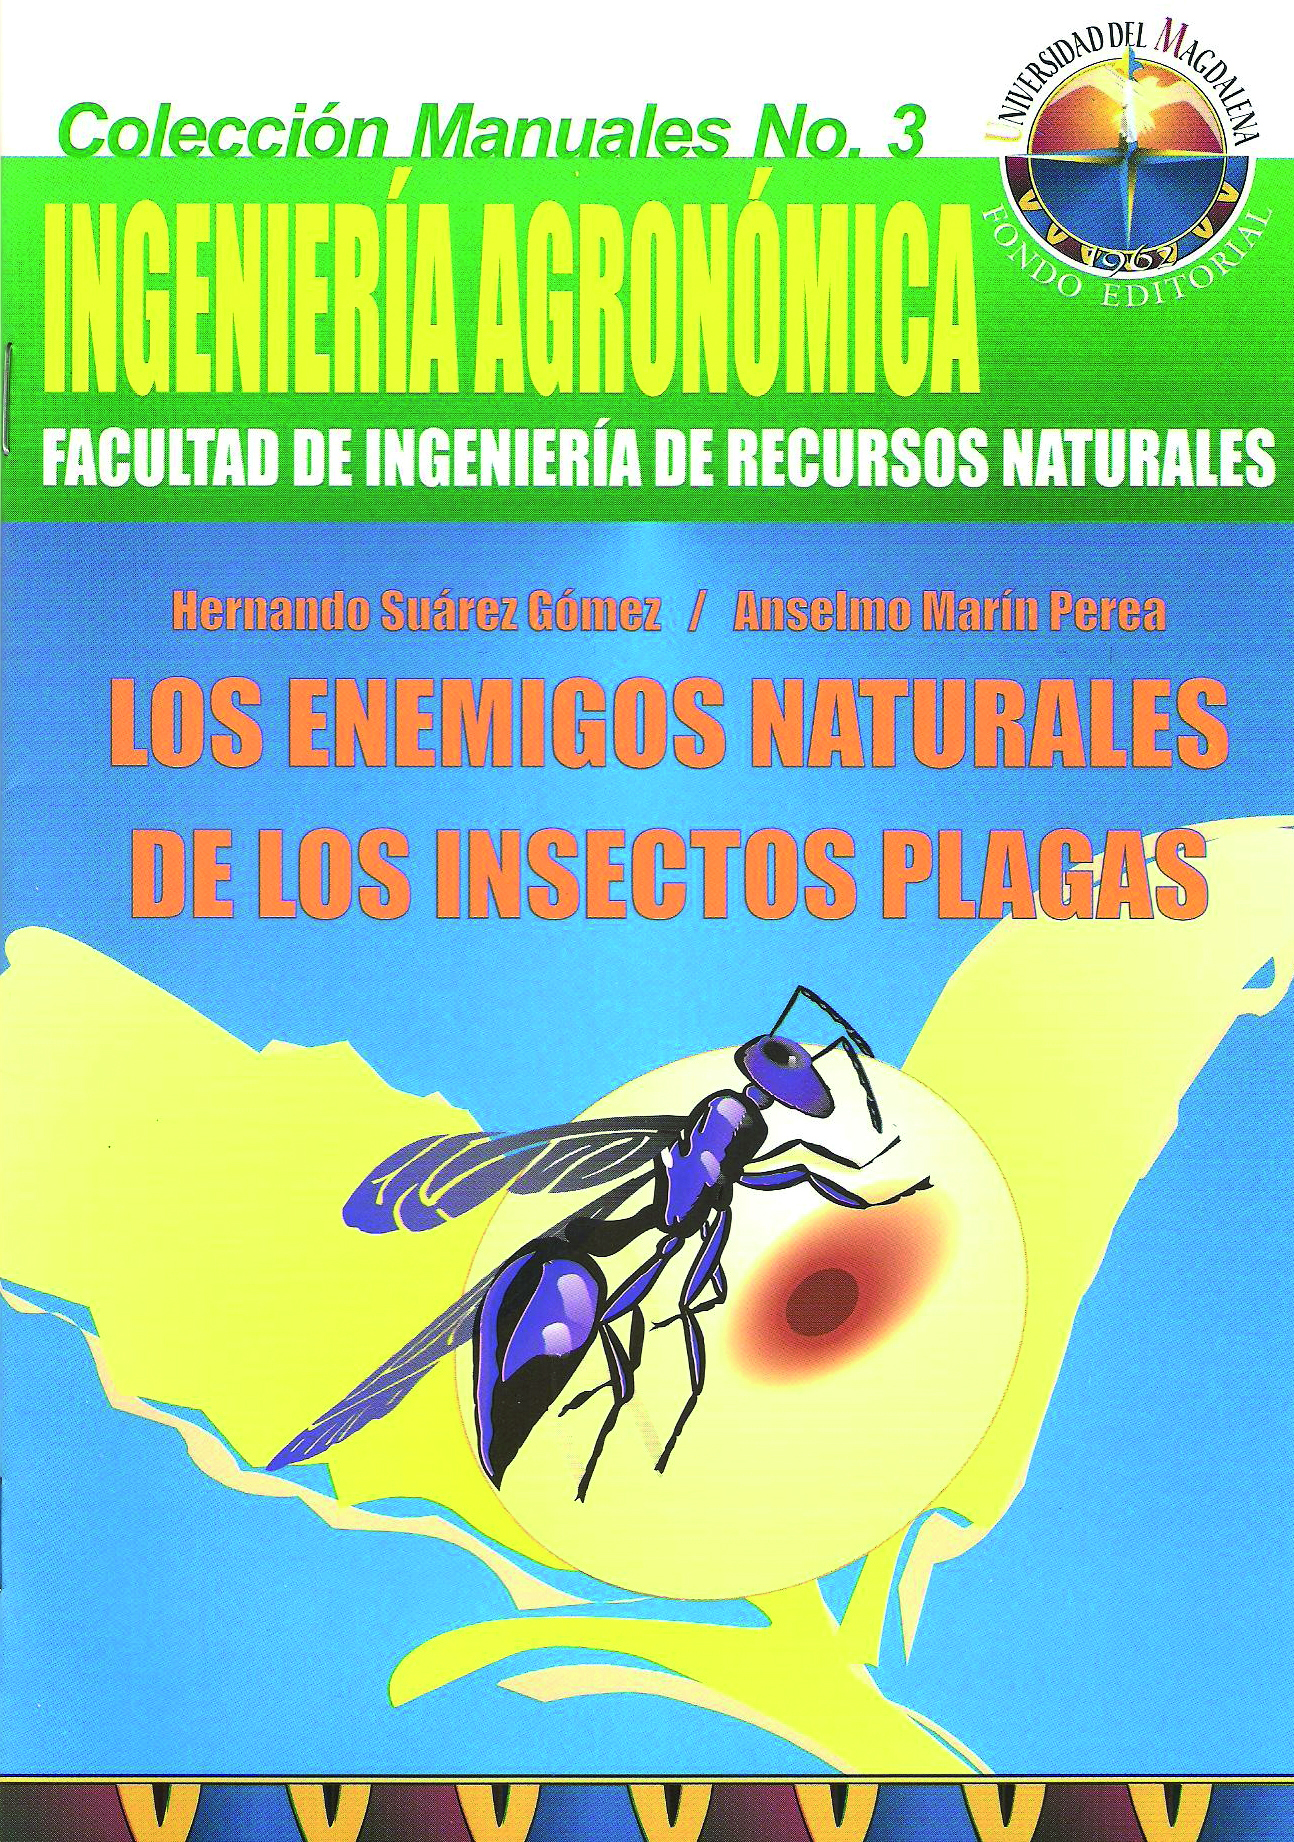 Manual de ingeniería Agronómica: Los enemigos naturales de los insectos y plagas